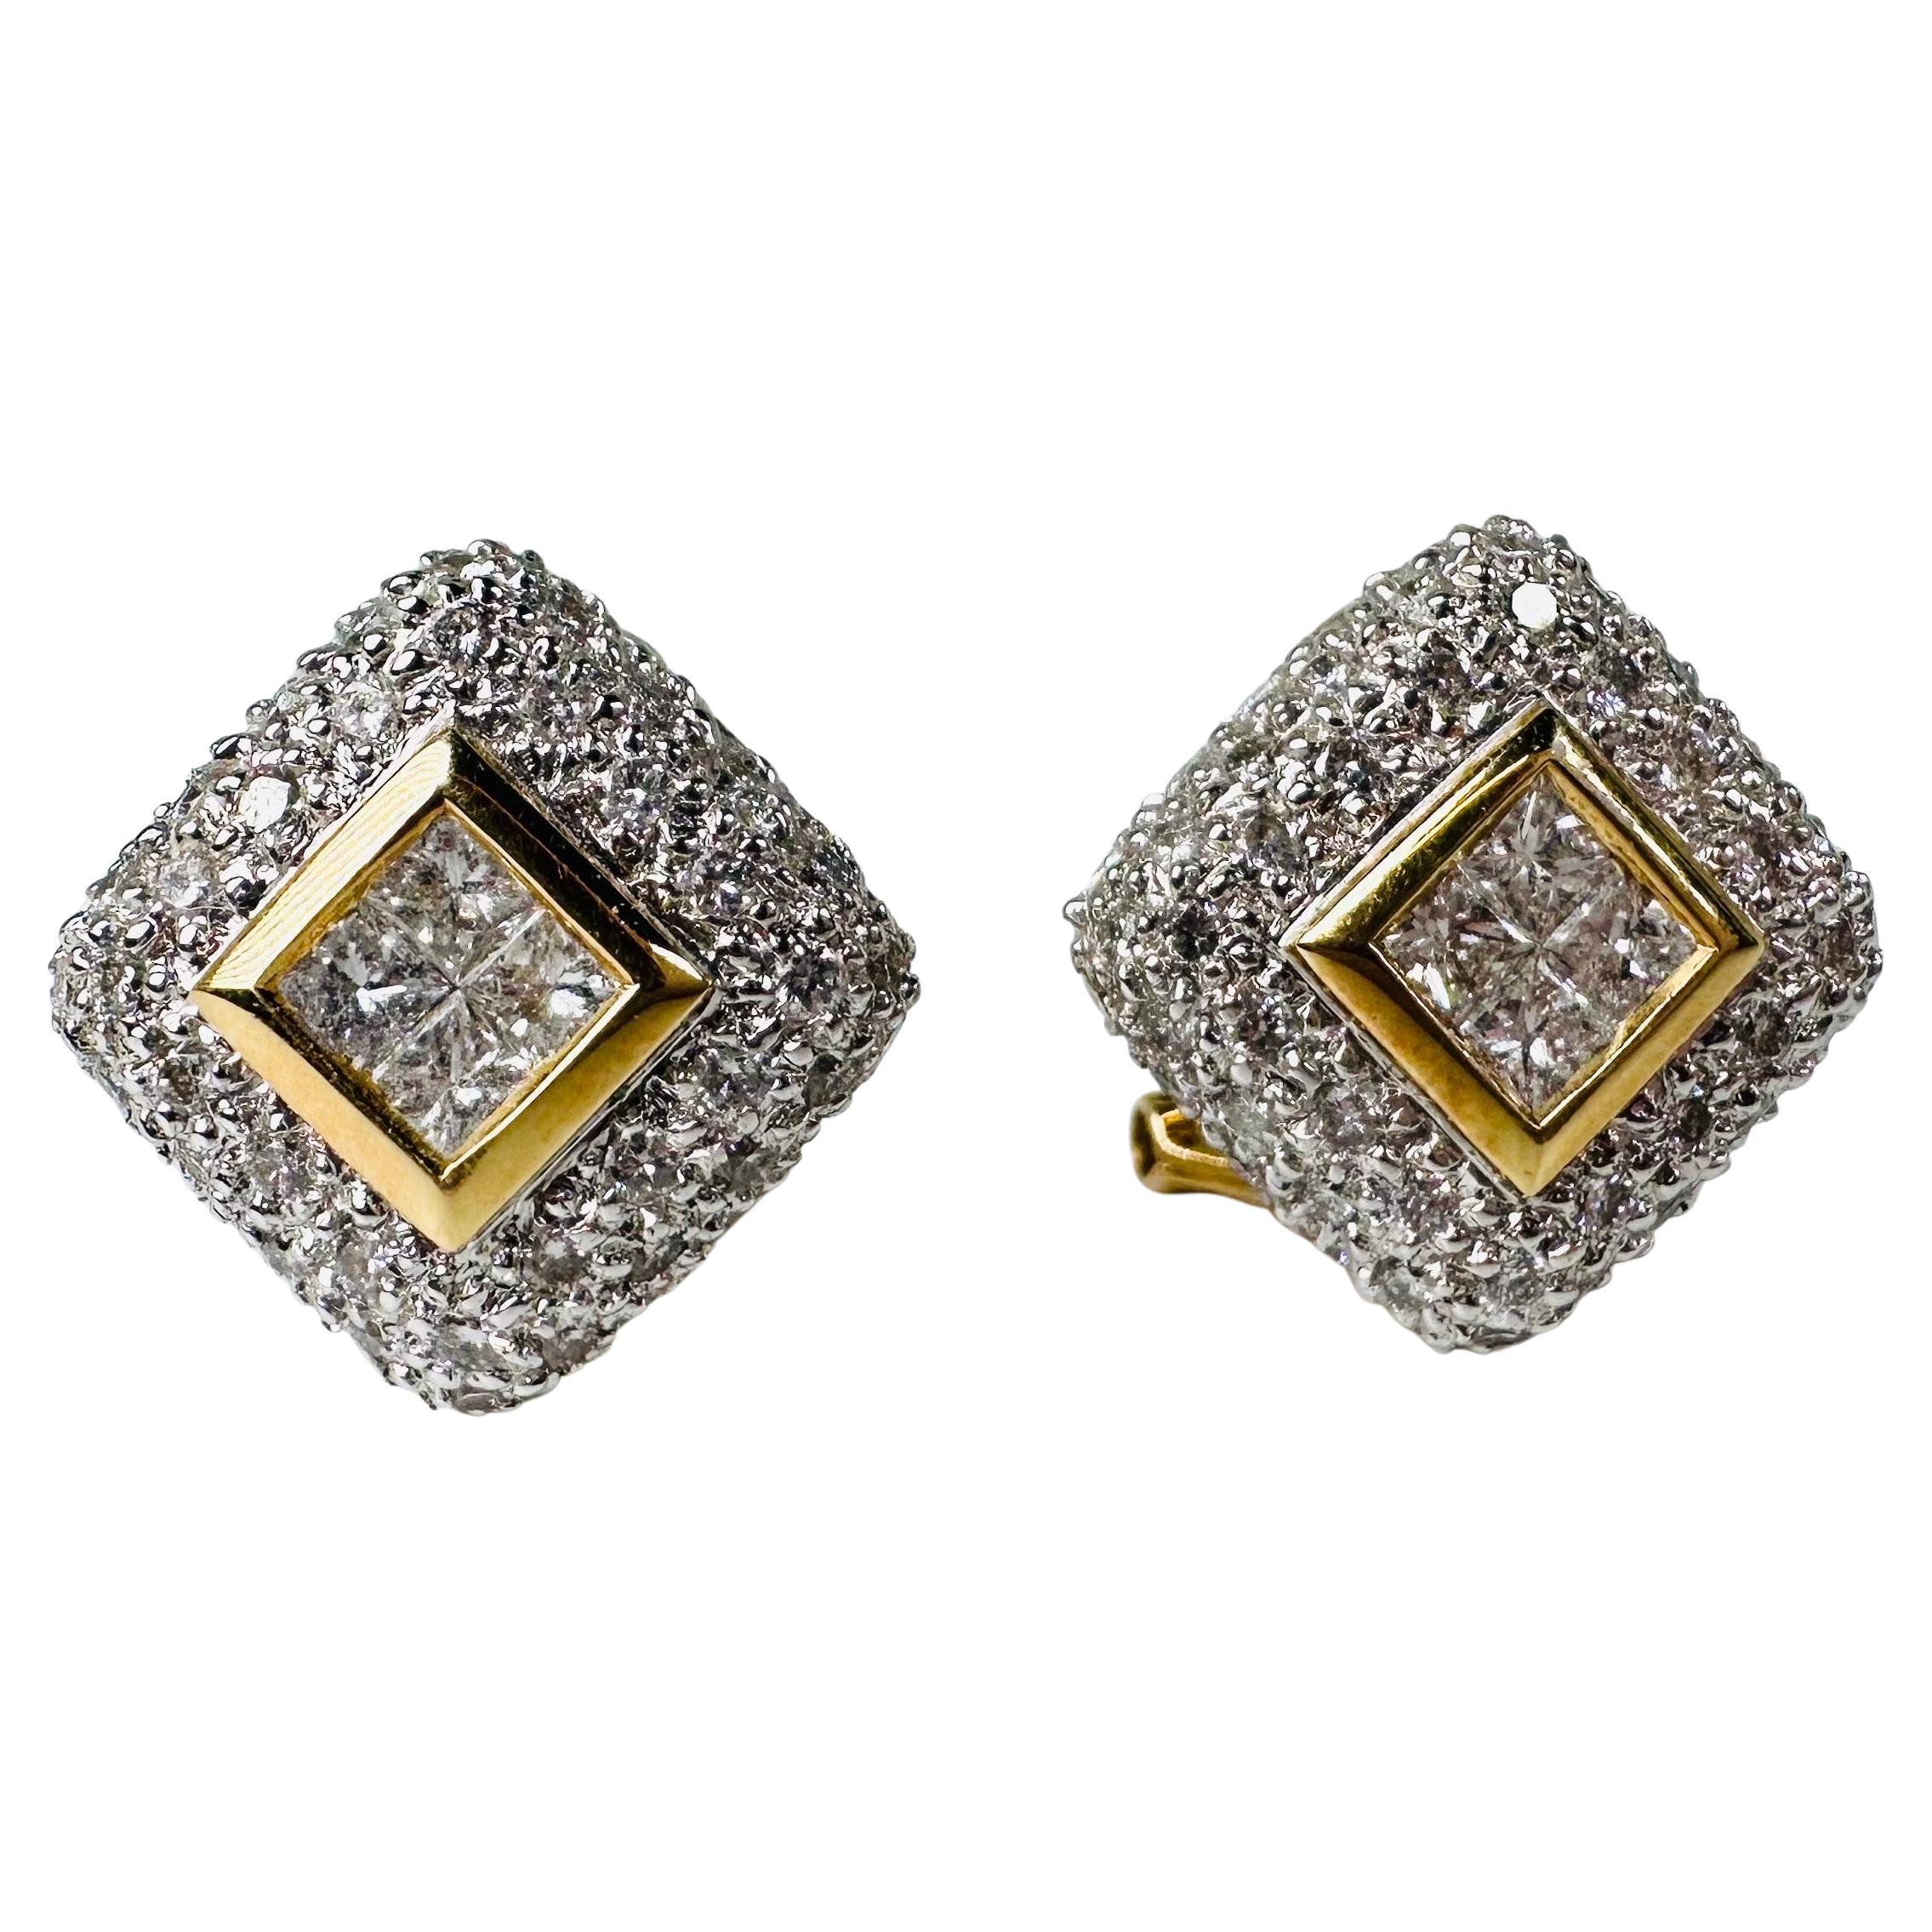 Pave diamond earrings 18KT white gold large omega diamond earrings For Sale